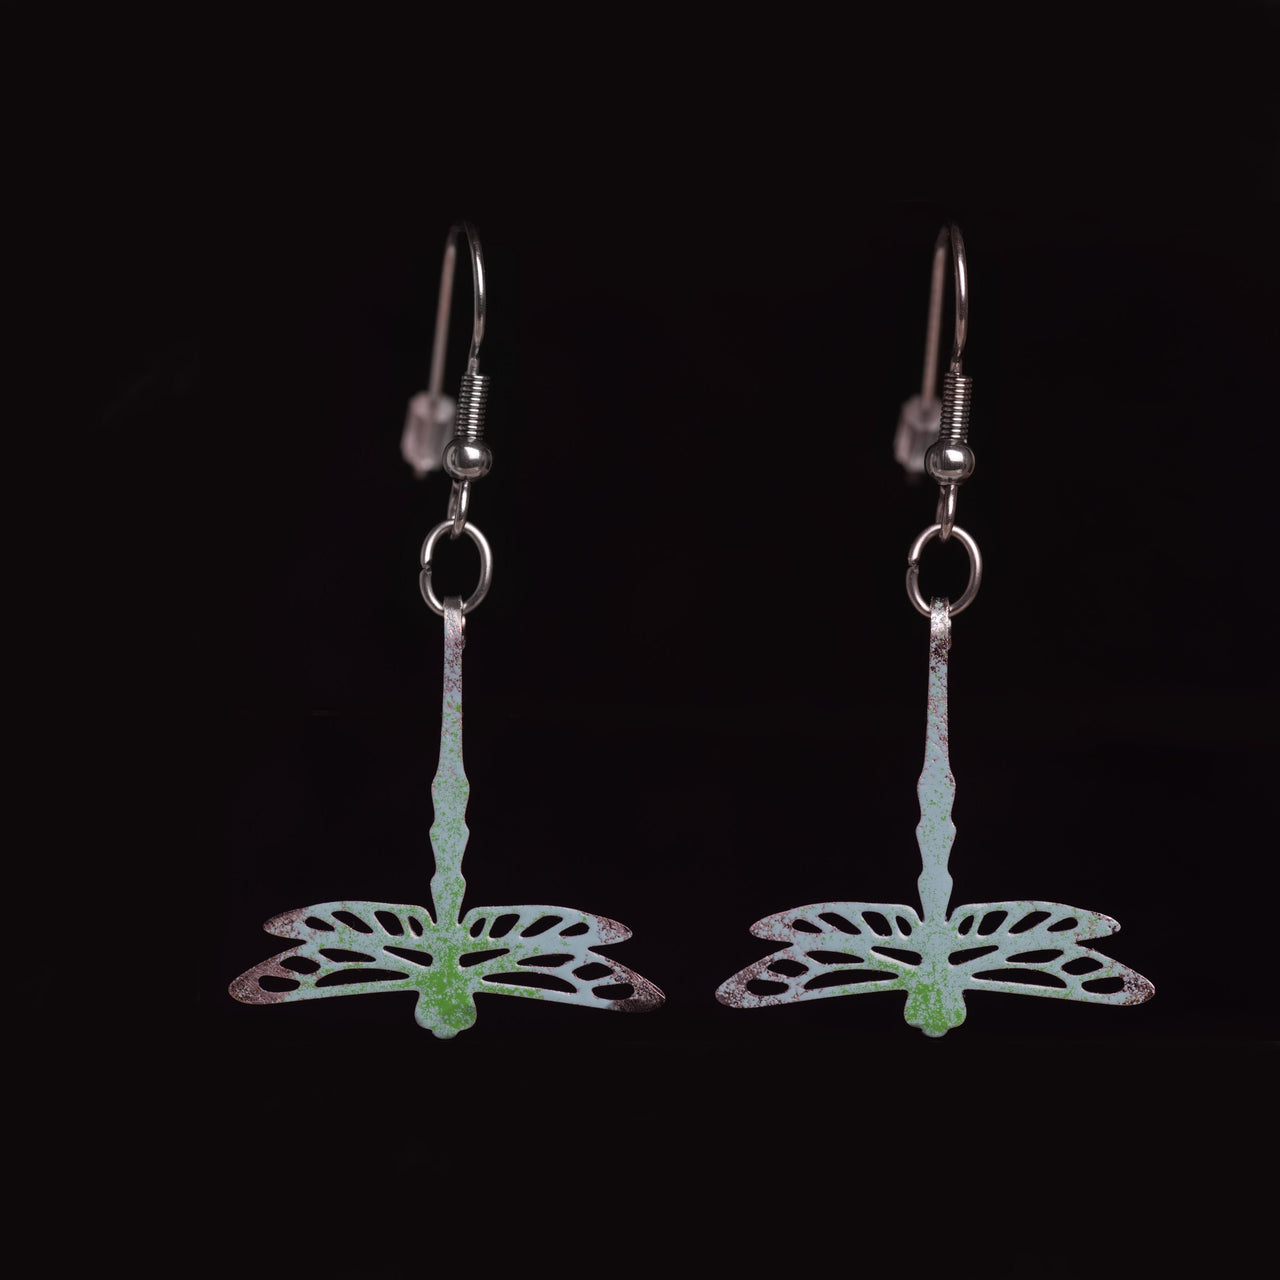 Green Dragonfly Earrings